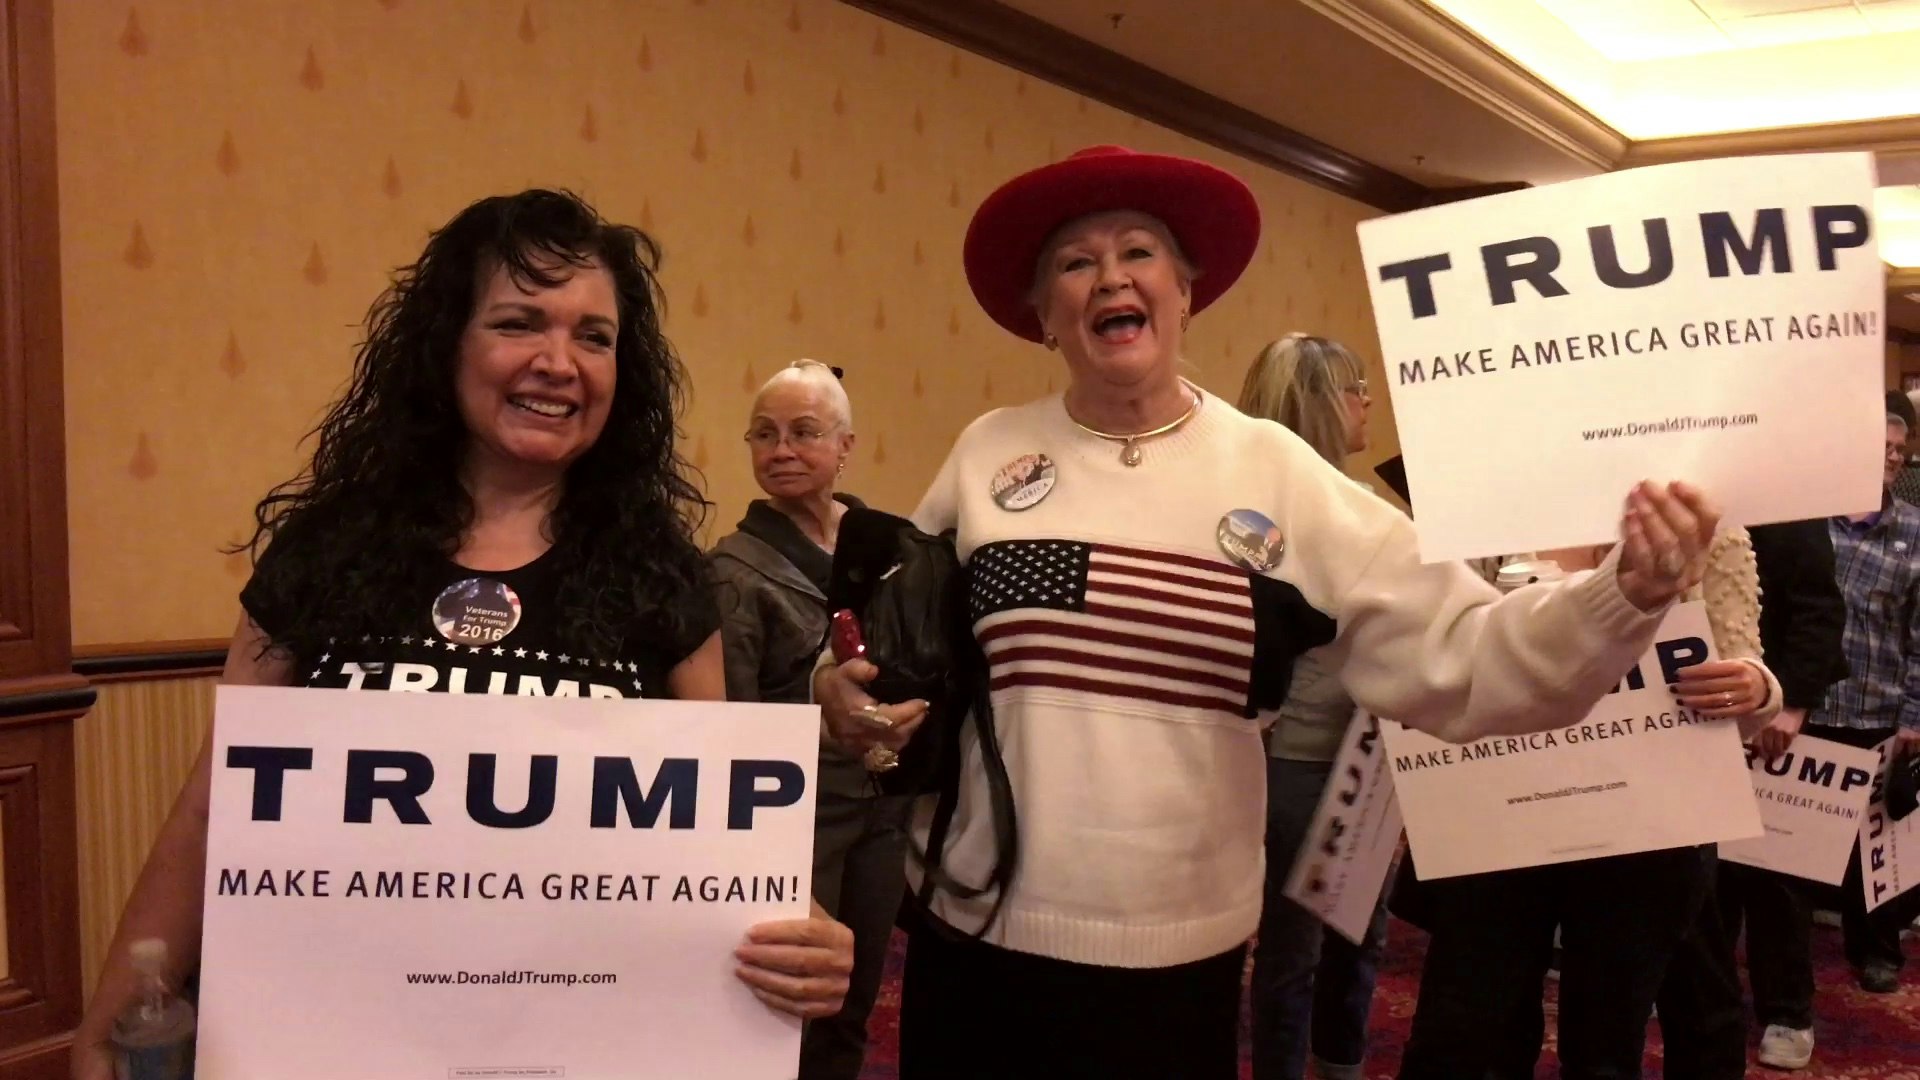 Trump supporters love Trump